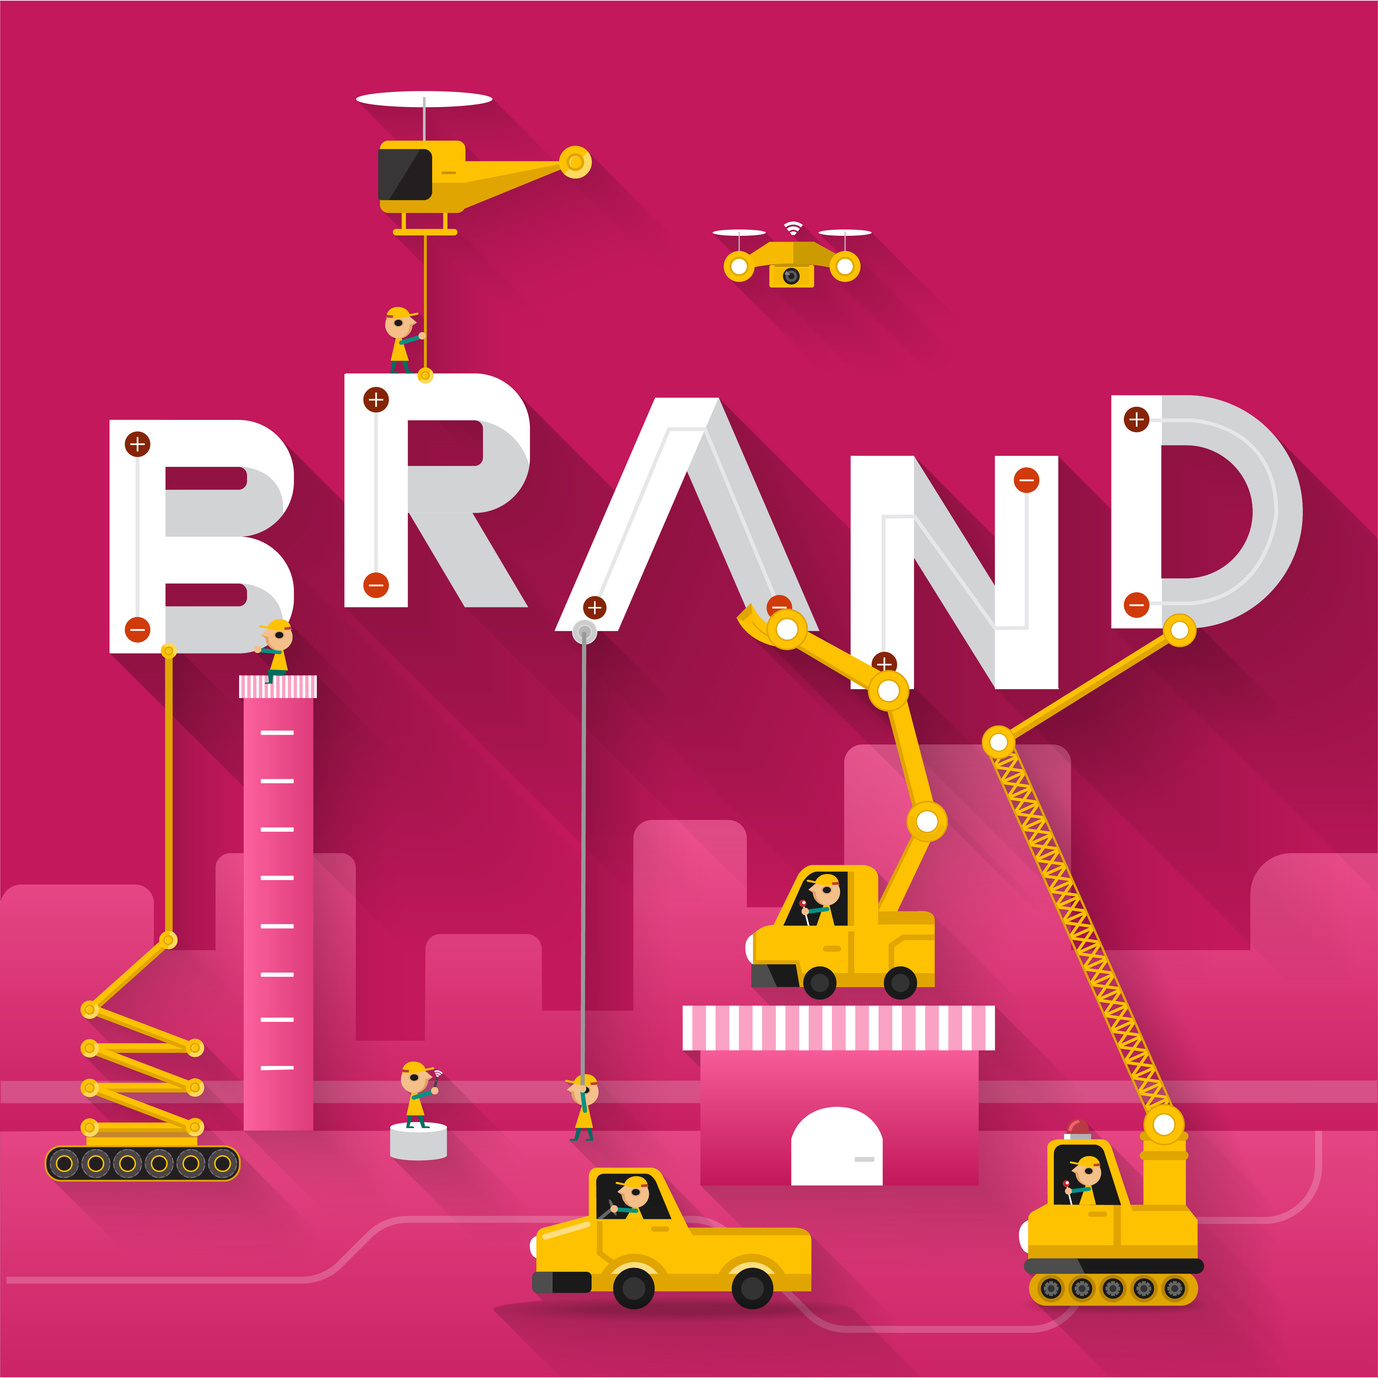 9 Ways to Brand Build With Digital Marketing